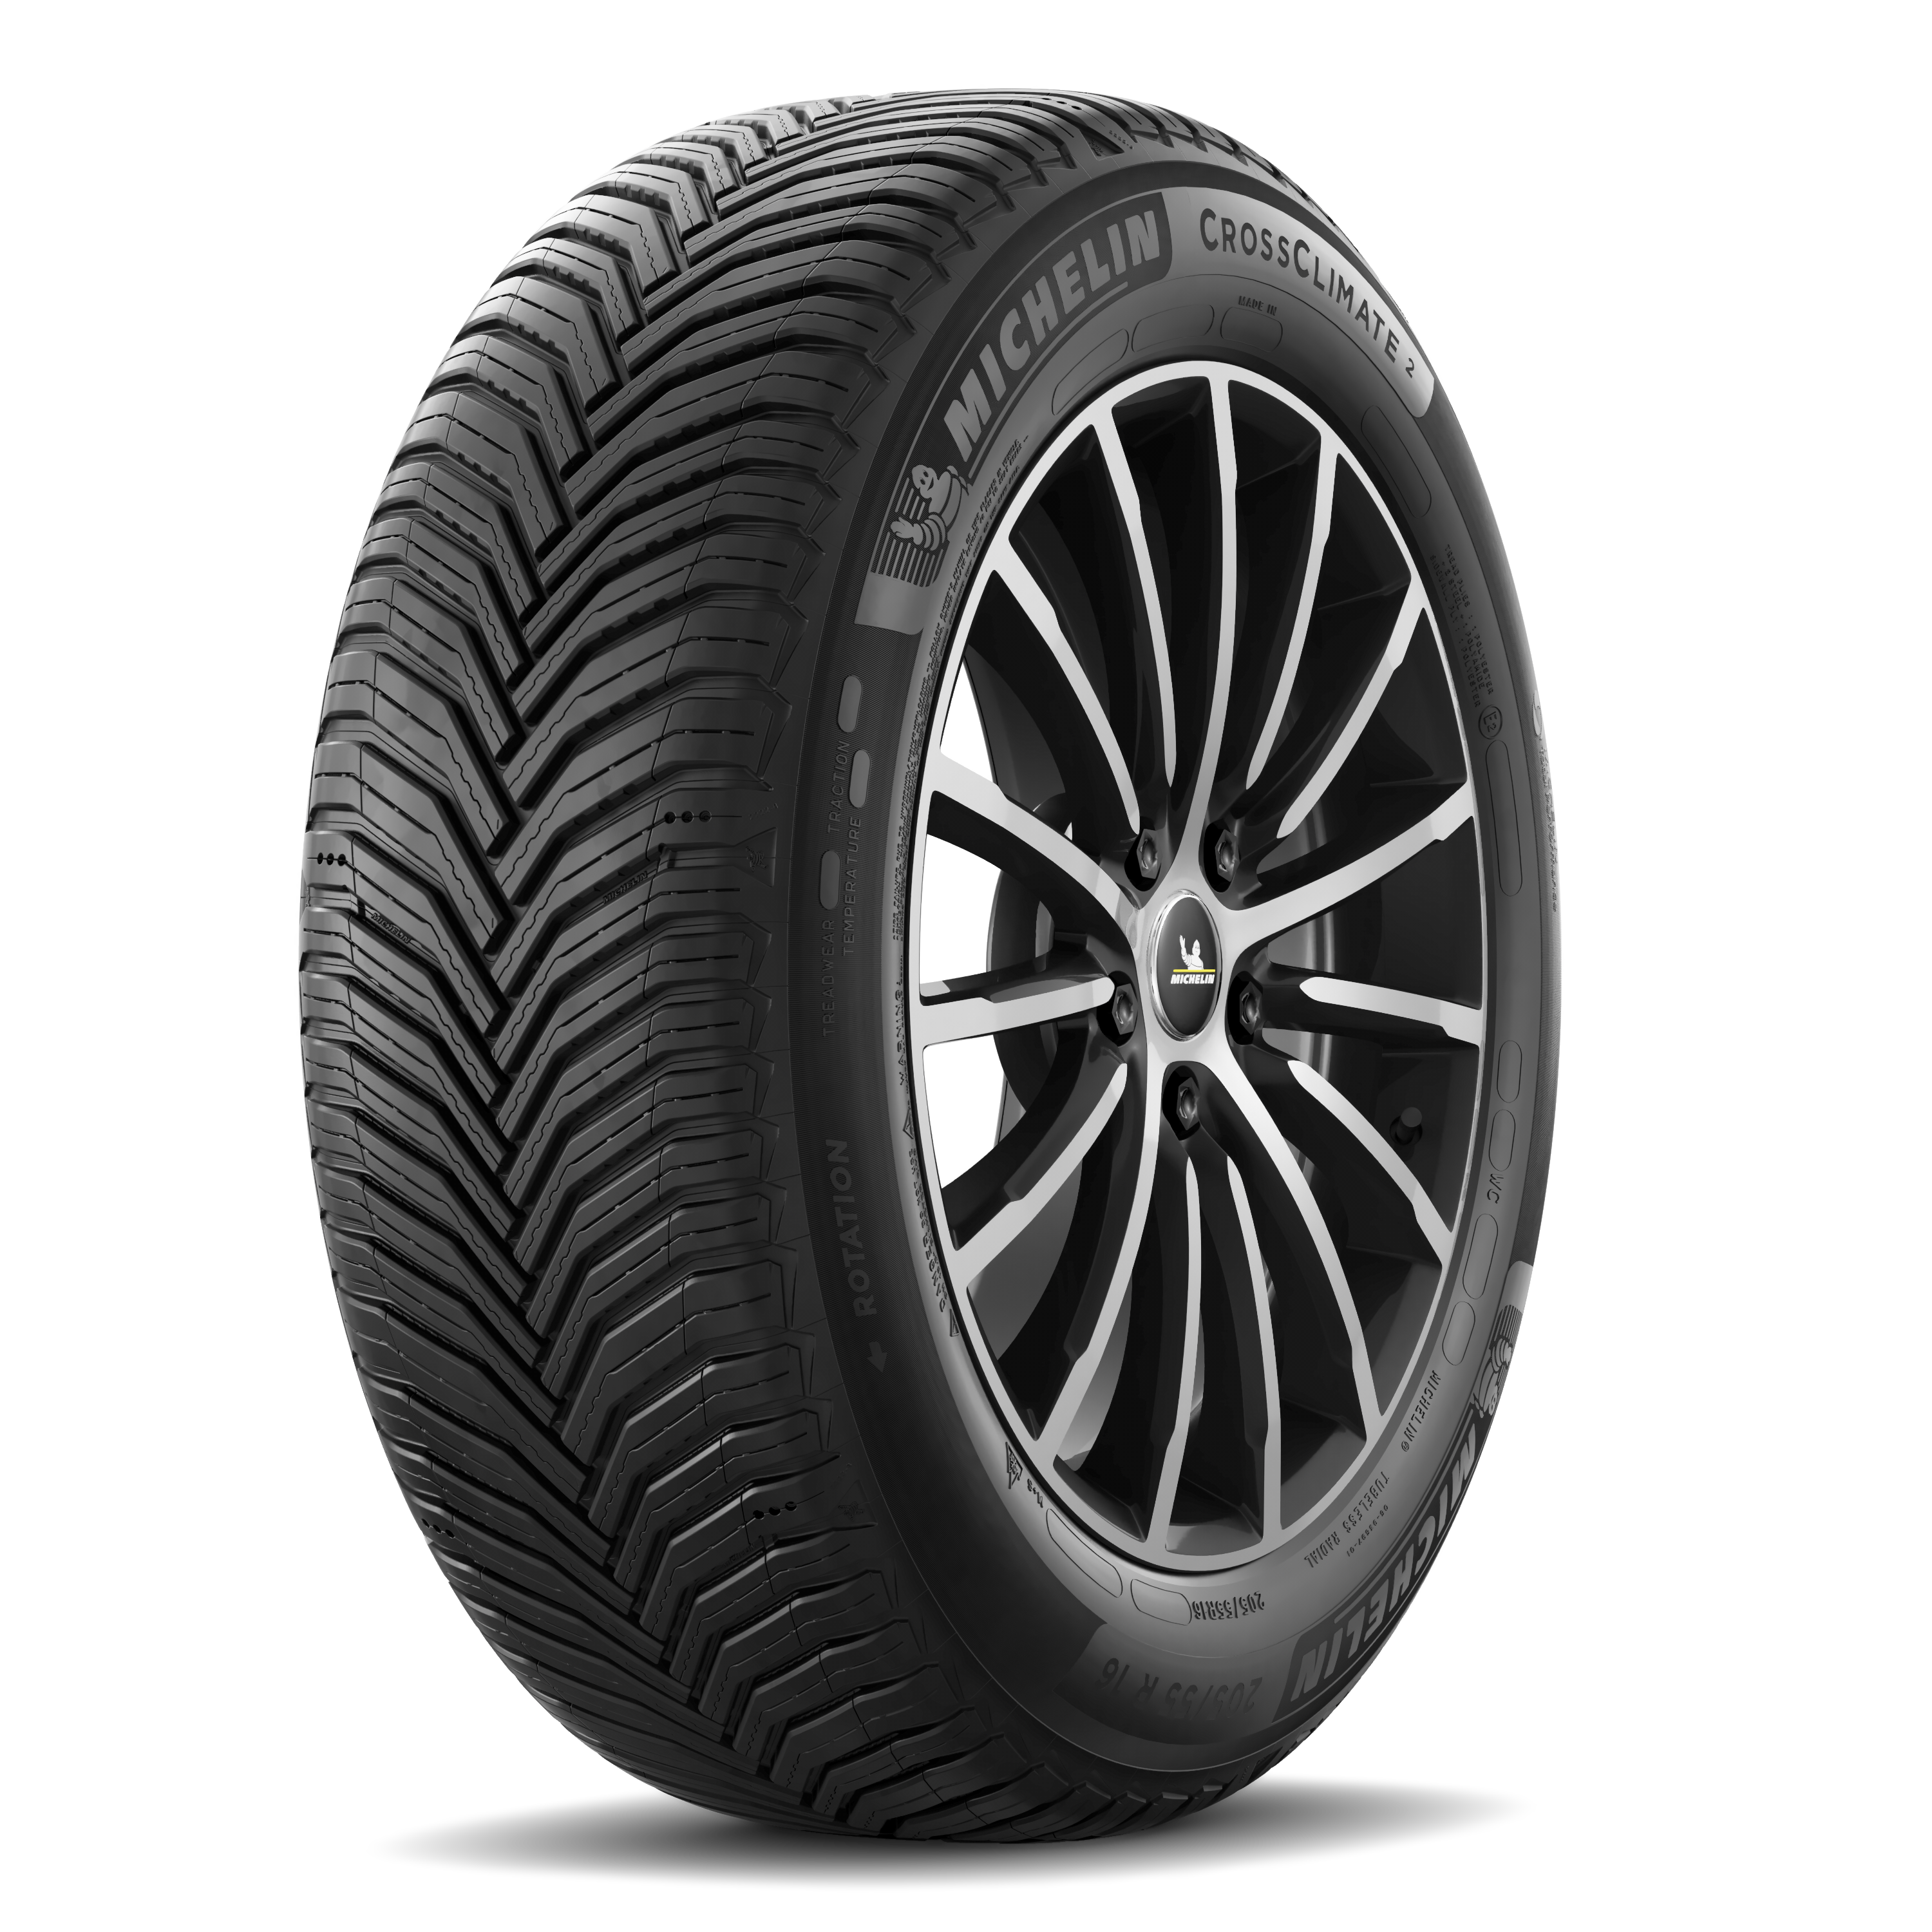 Gomme Nuove Michelin 245/45 R20 99V CROSSCLIMATE 2 SUV M+S pneumatici nuovi All Season